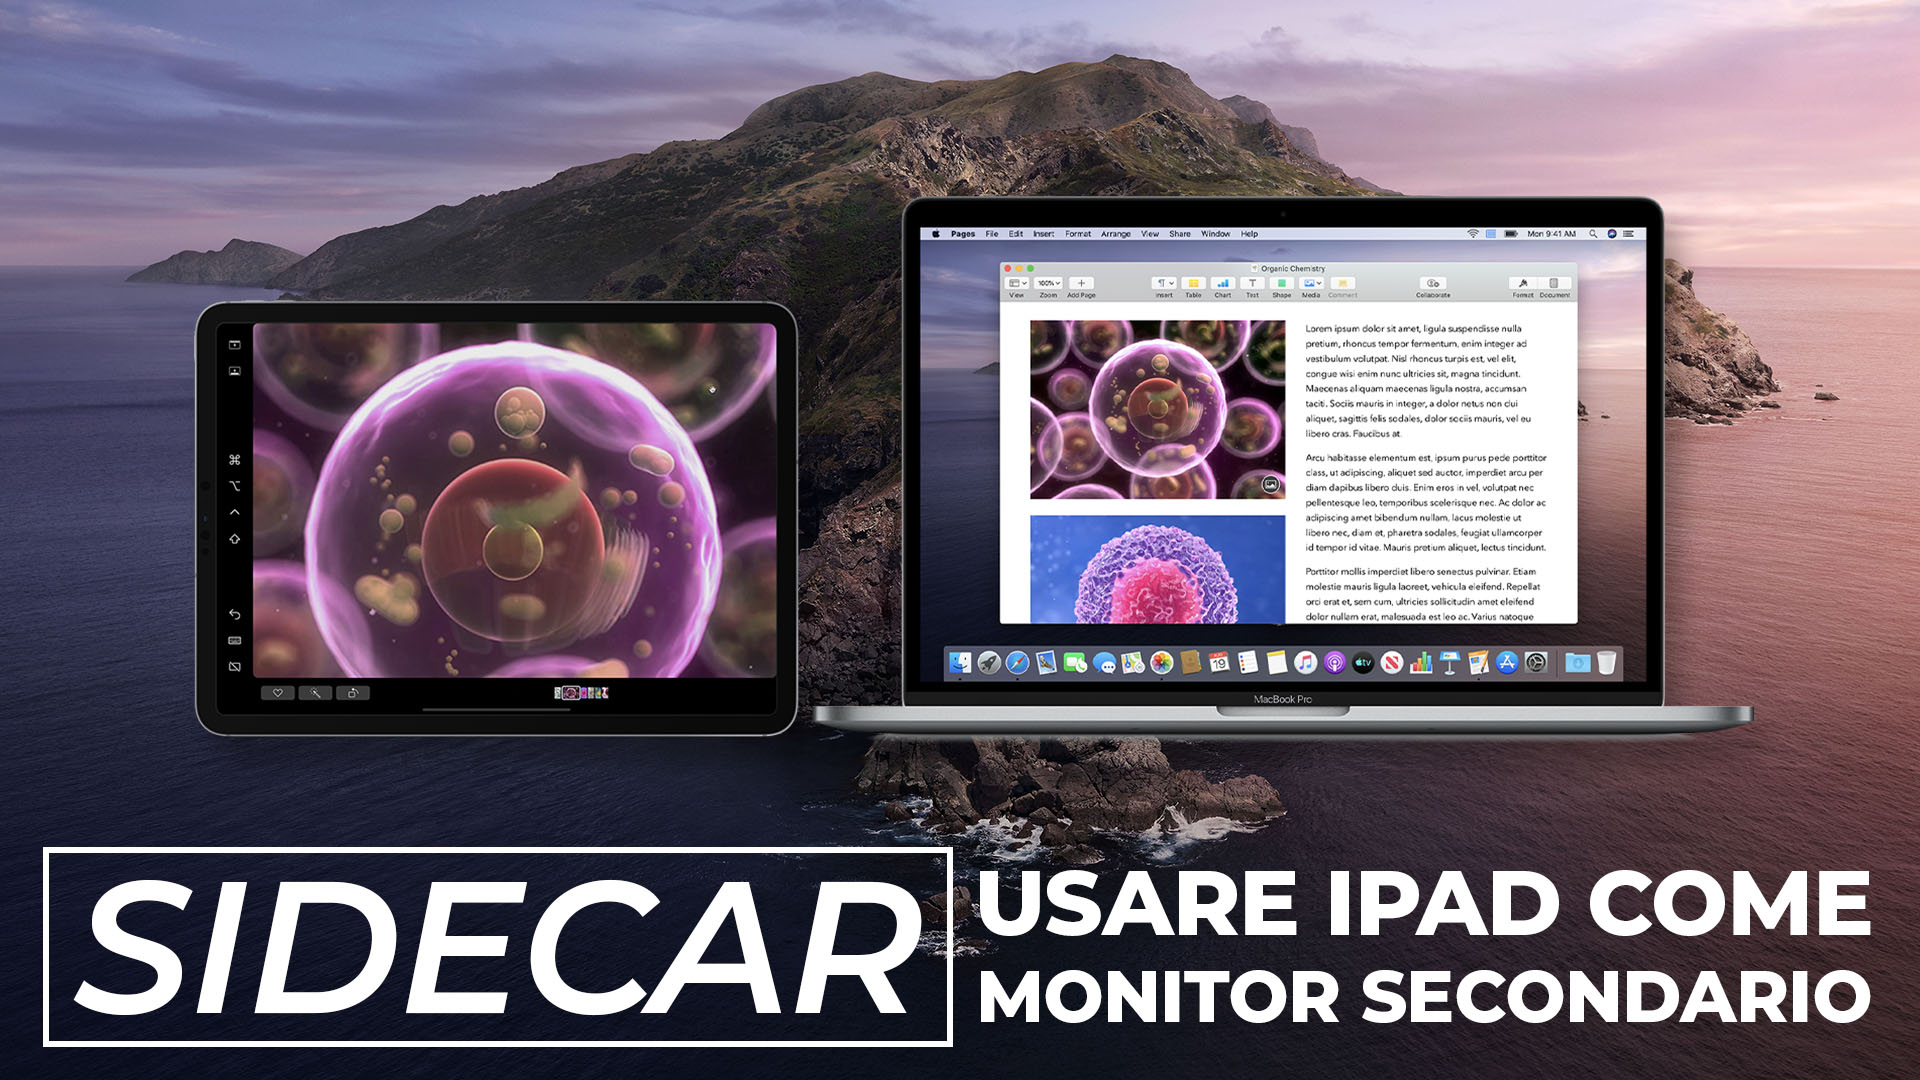 Sidecar-usare-iPad-come-monitor-secondario